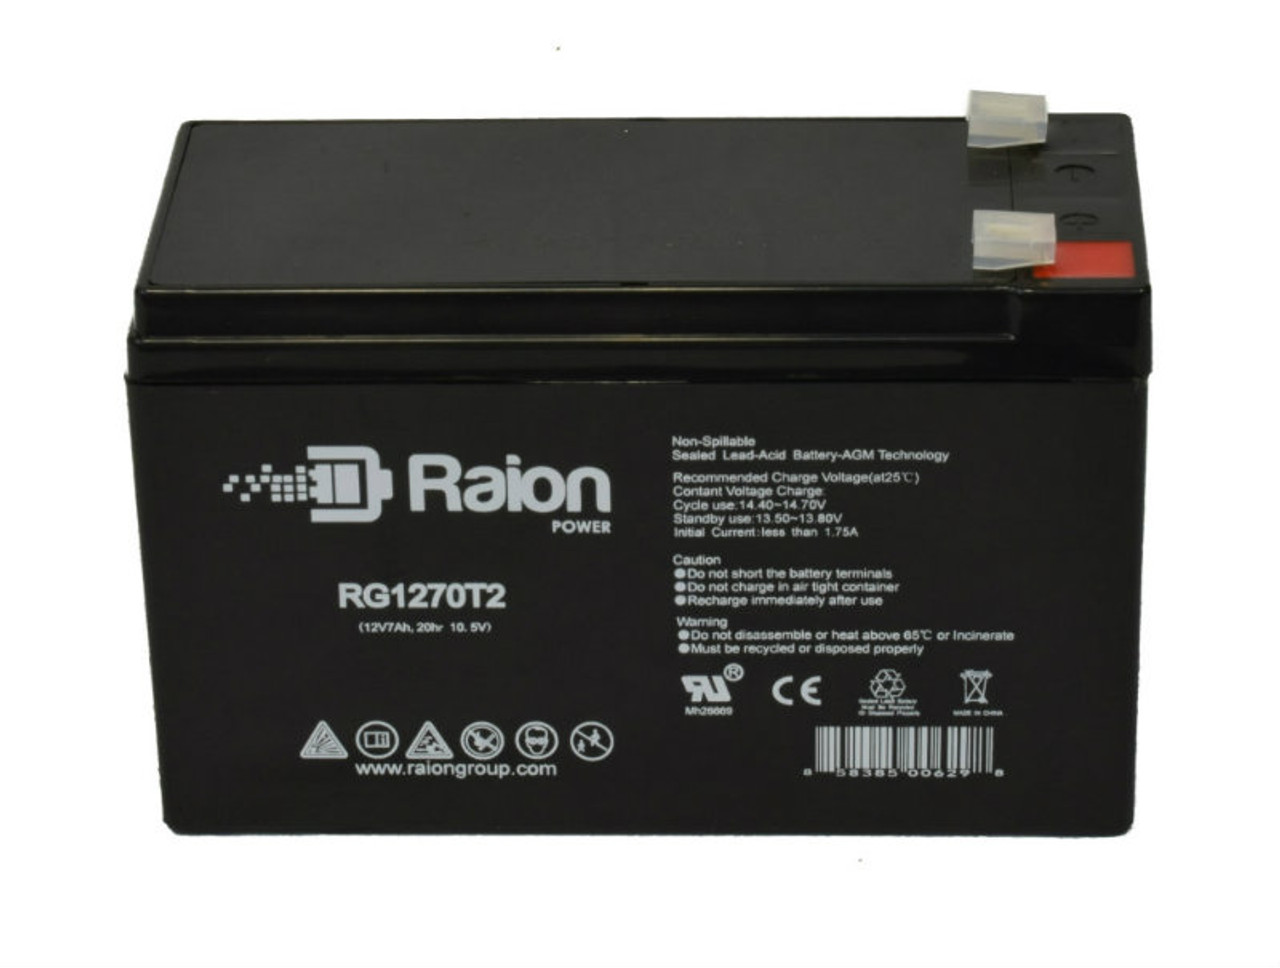 Raion Power RG1270T1 12V 7Ah Lead Acid Battery for Digital Security Power432 (Option 2)